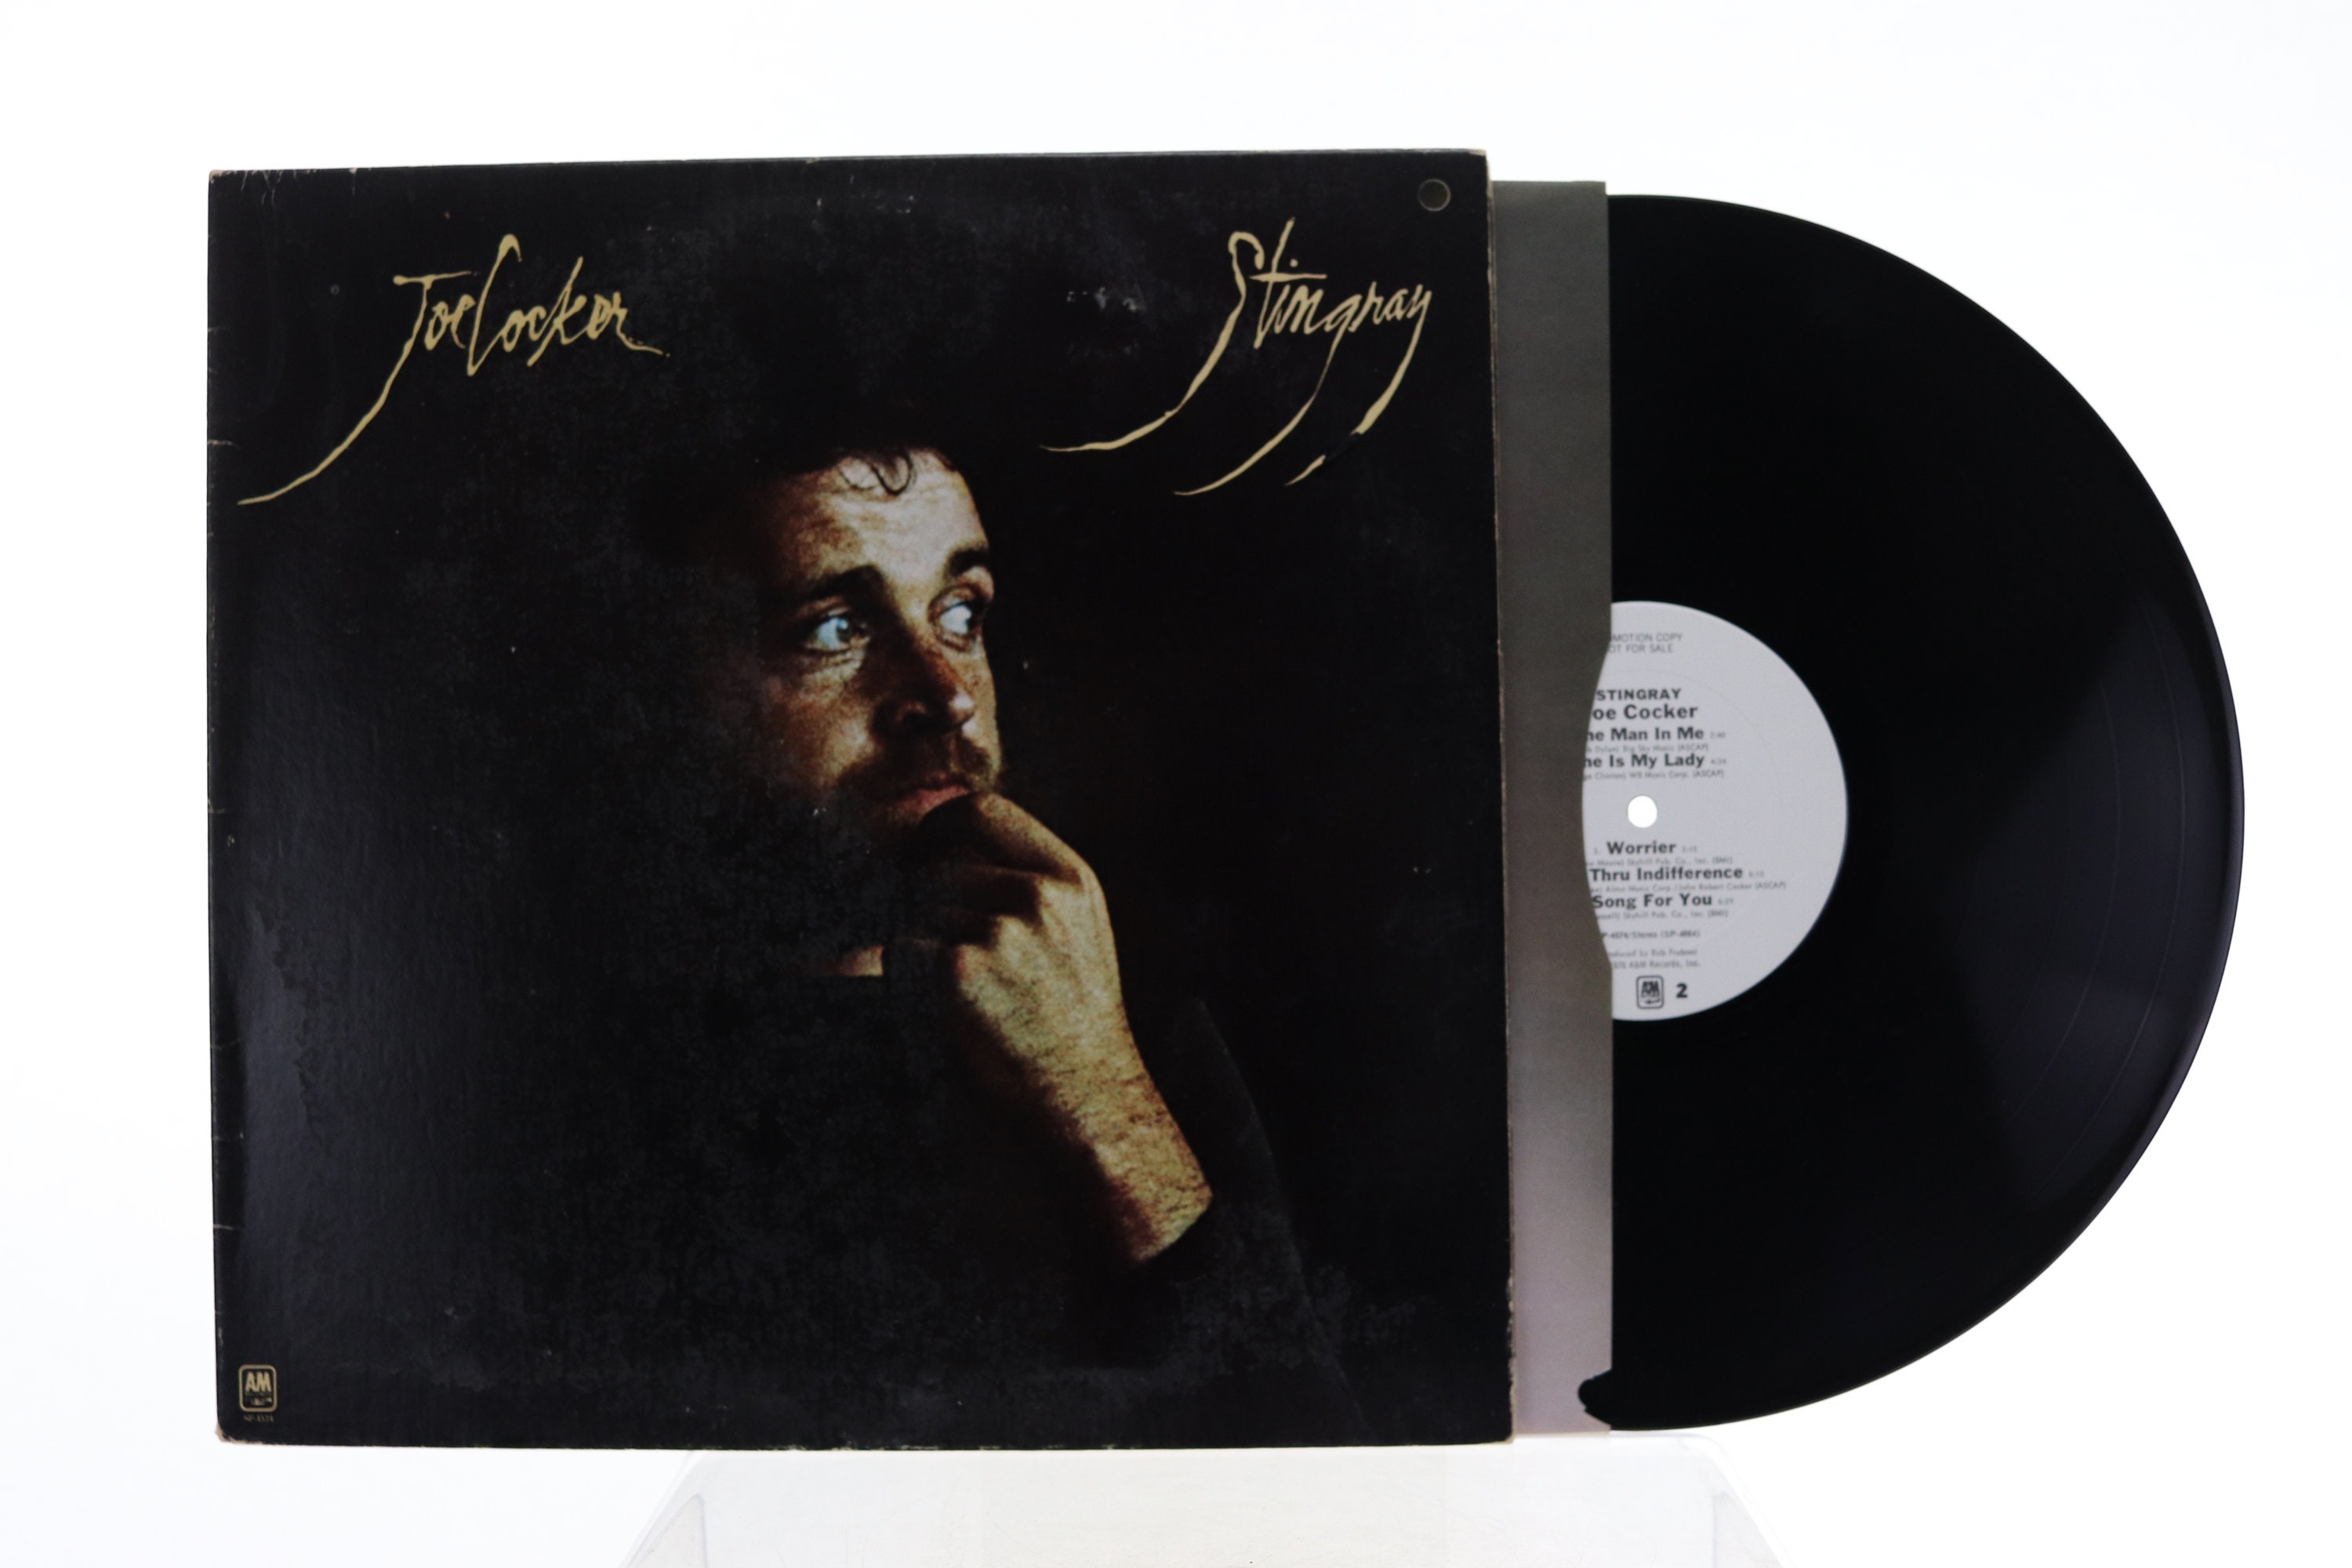 Joe Stingray Vinyl Record VG - Hong Kong